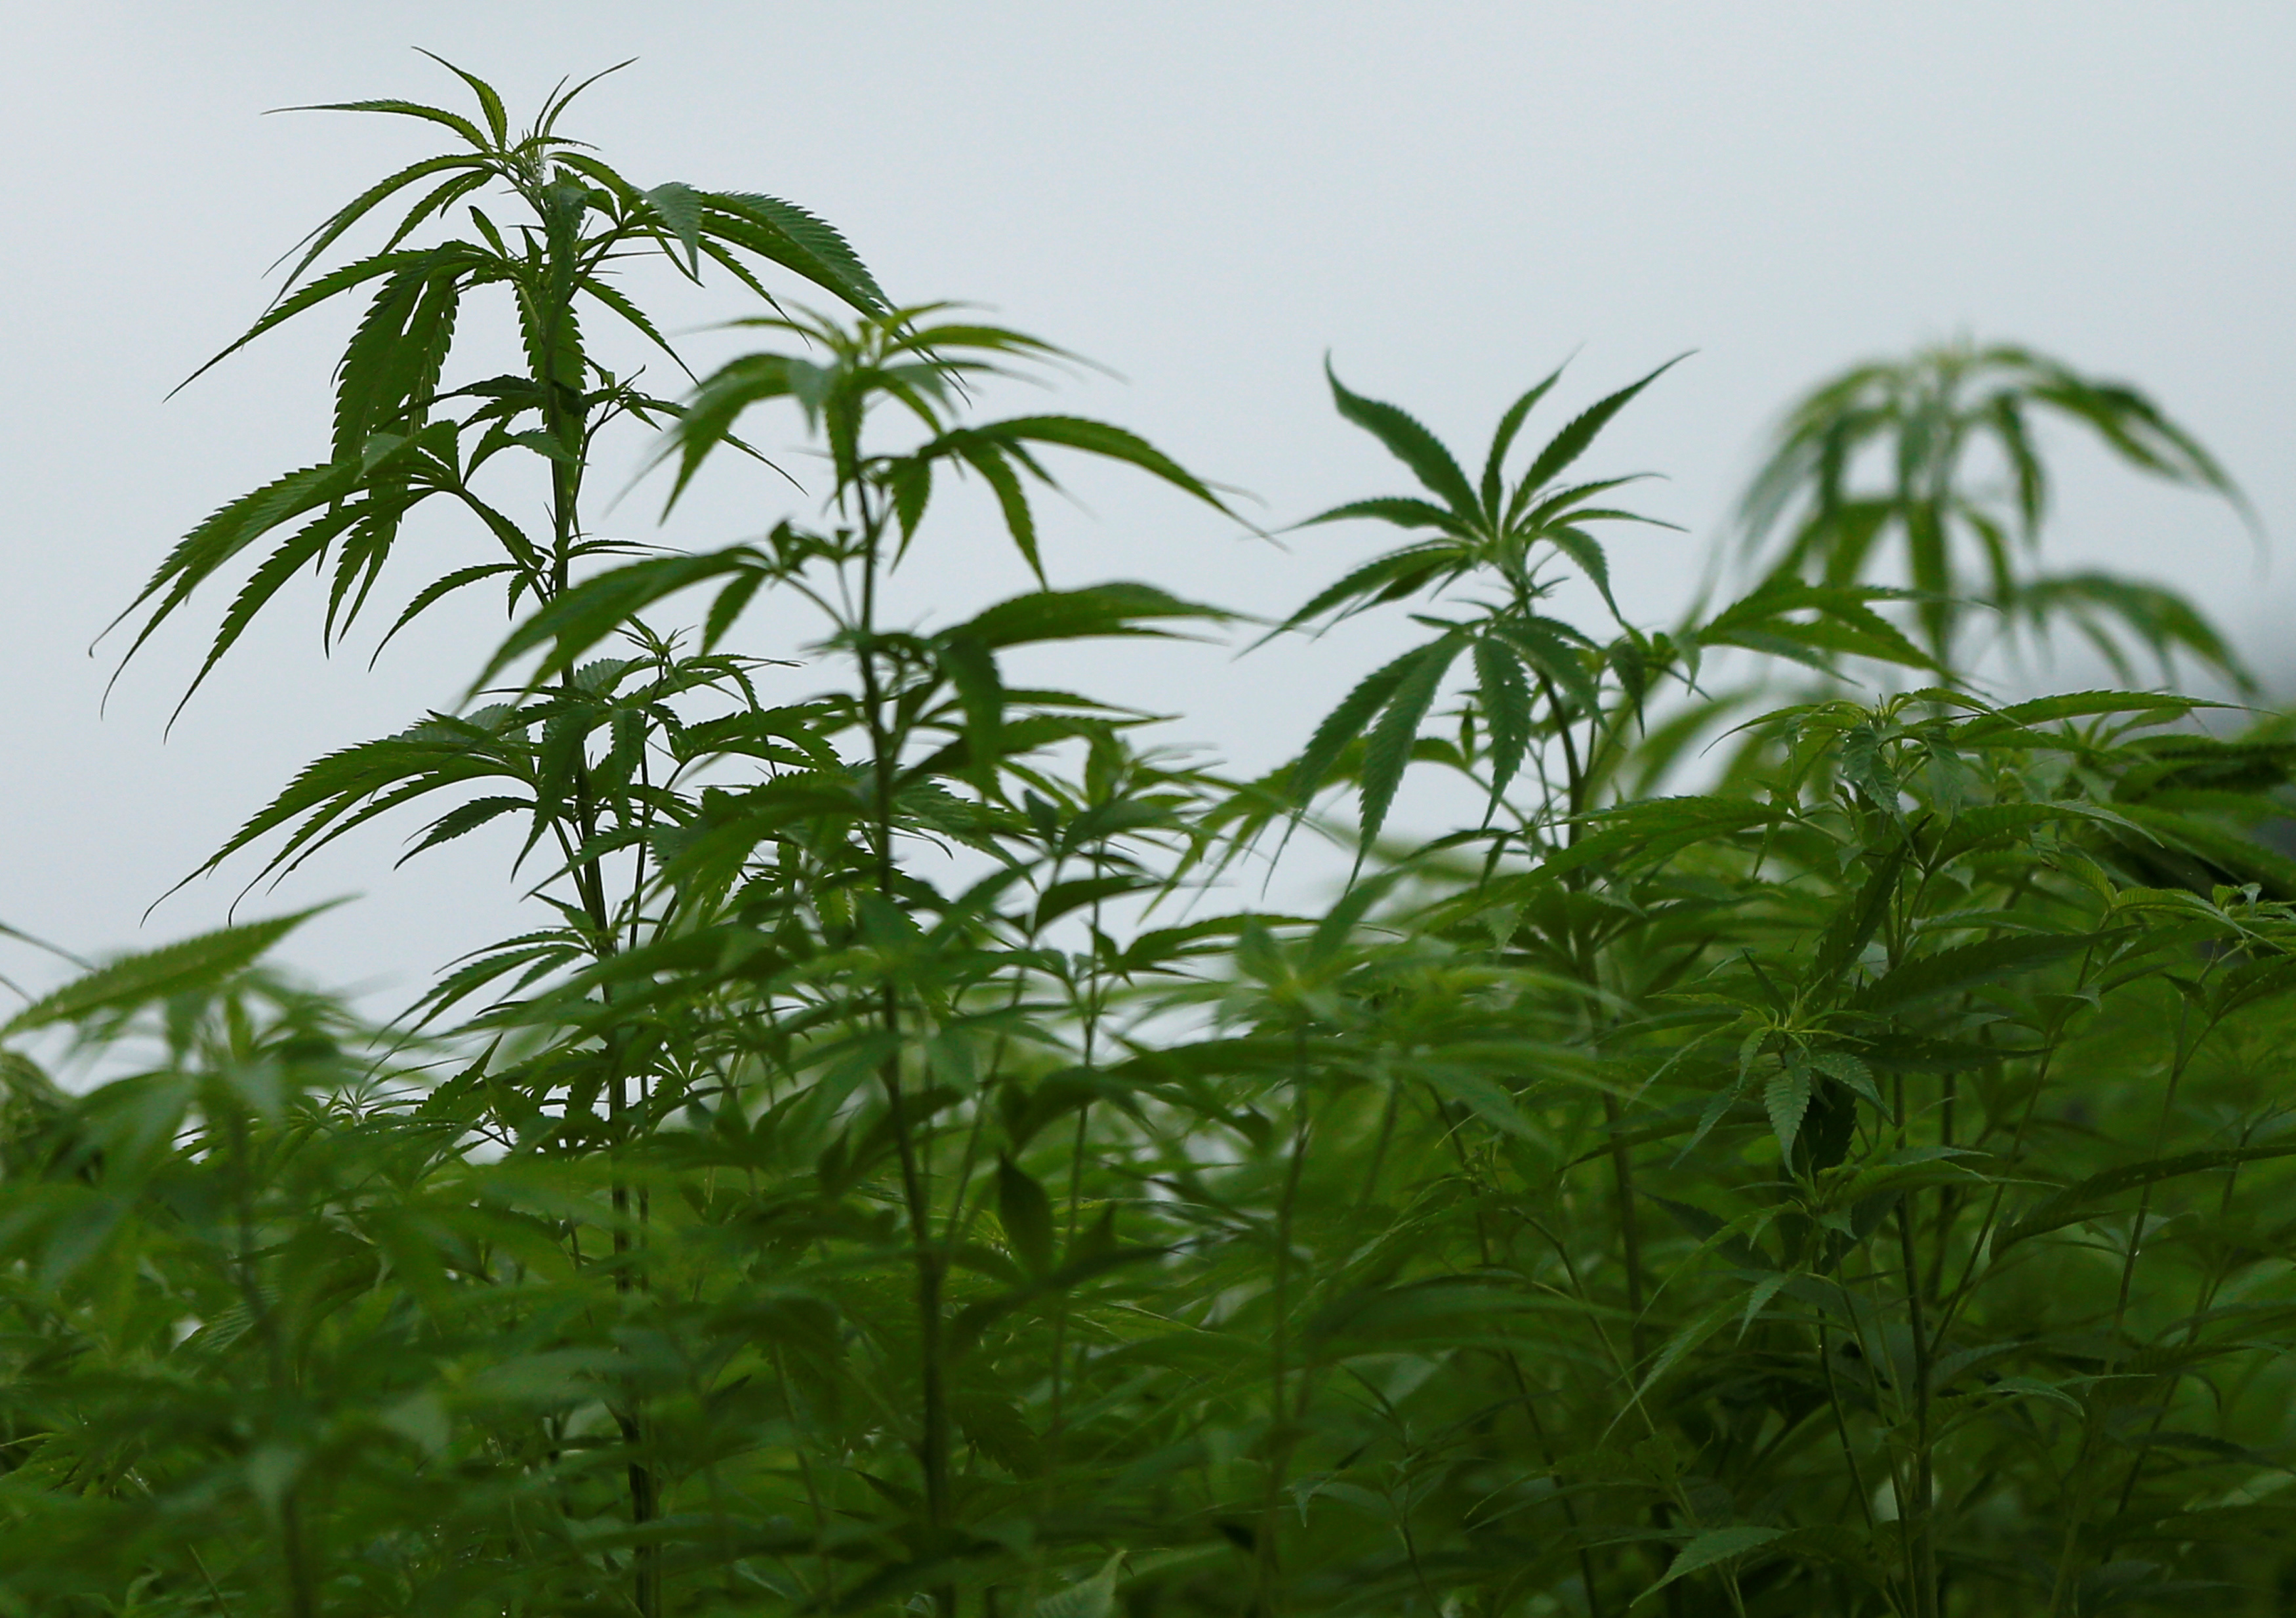 Leaves of marijuana plants are seen at Japan's largest legal marijuana farm in Kanuma, Japan